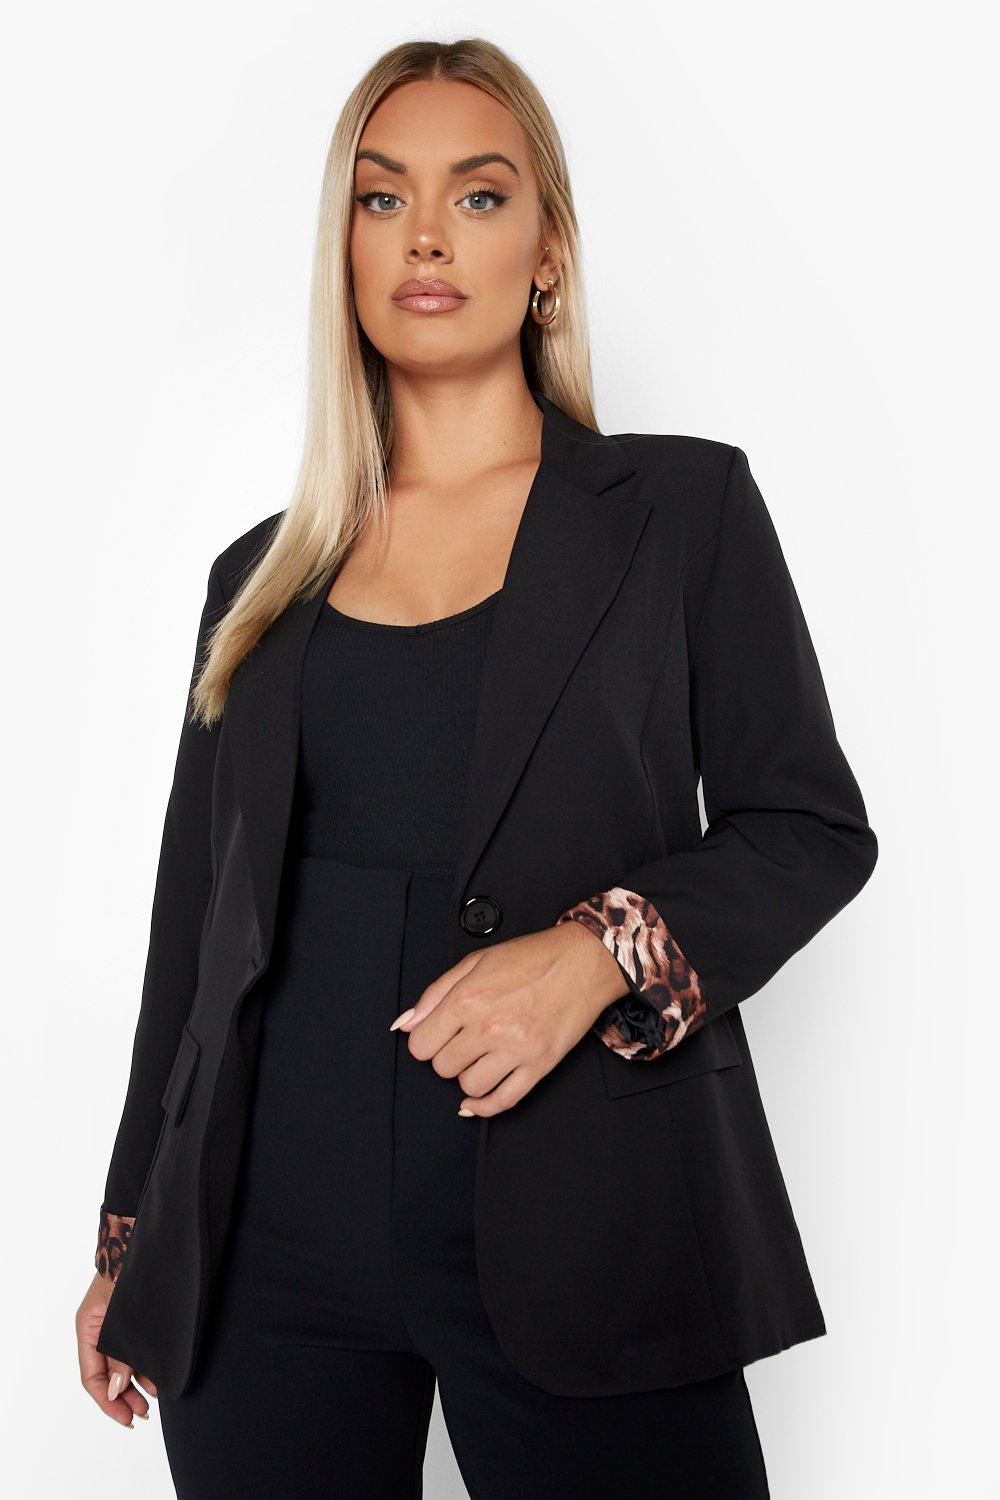 Plus Size Blazers | Size Women's Blazers | boohoo Australia